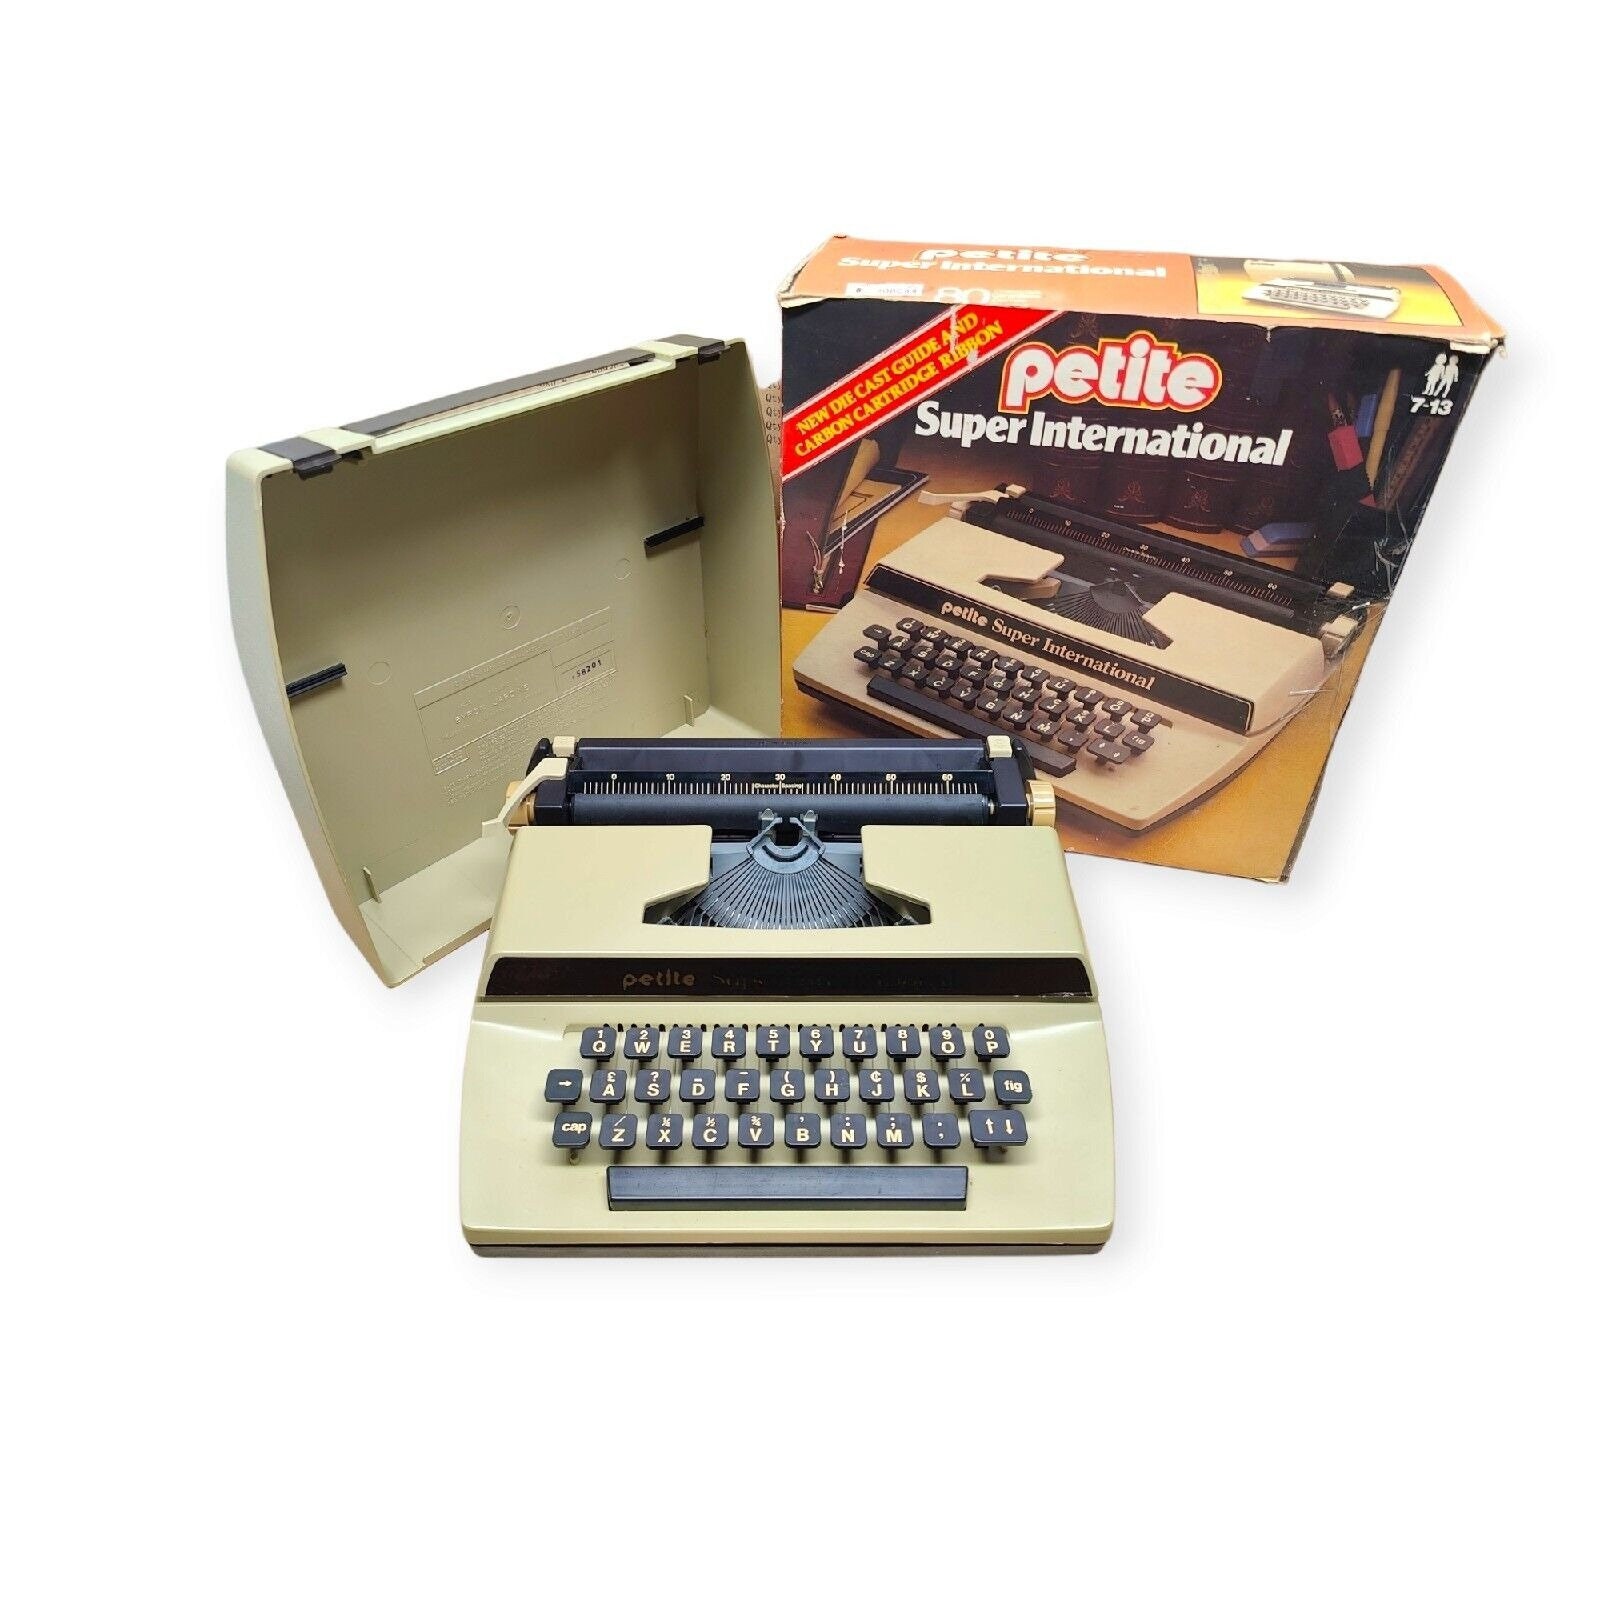 Petite Super International Kids Typewriter - Portable with